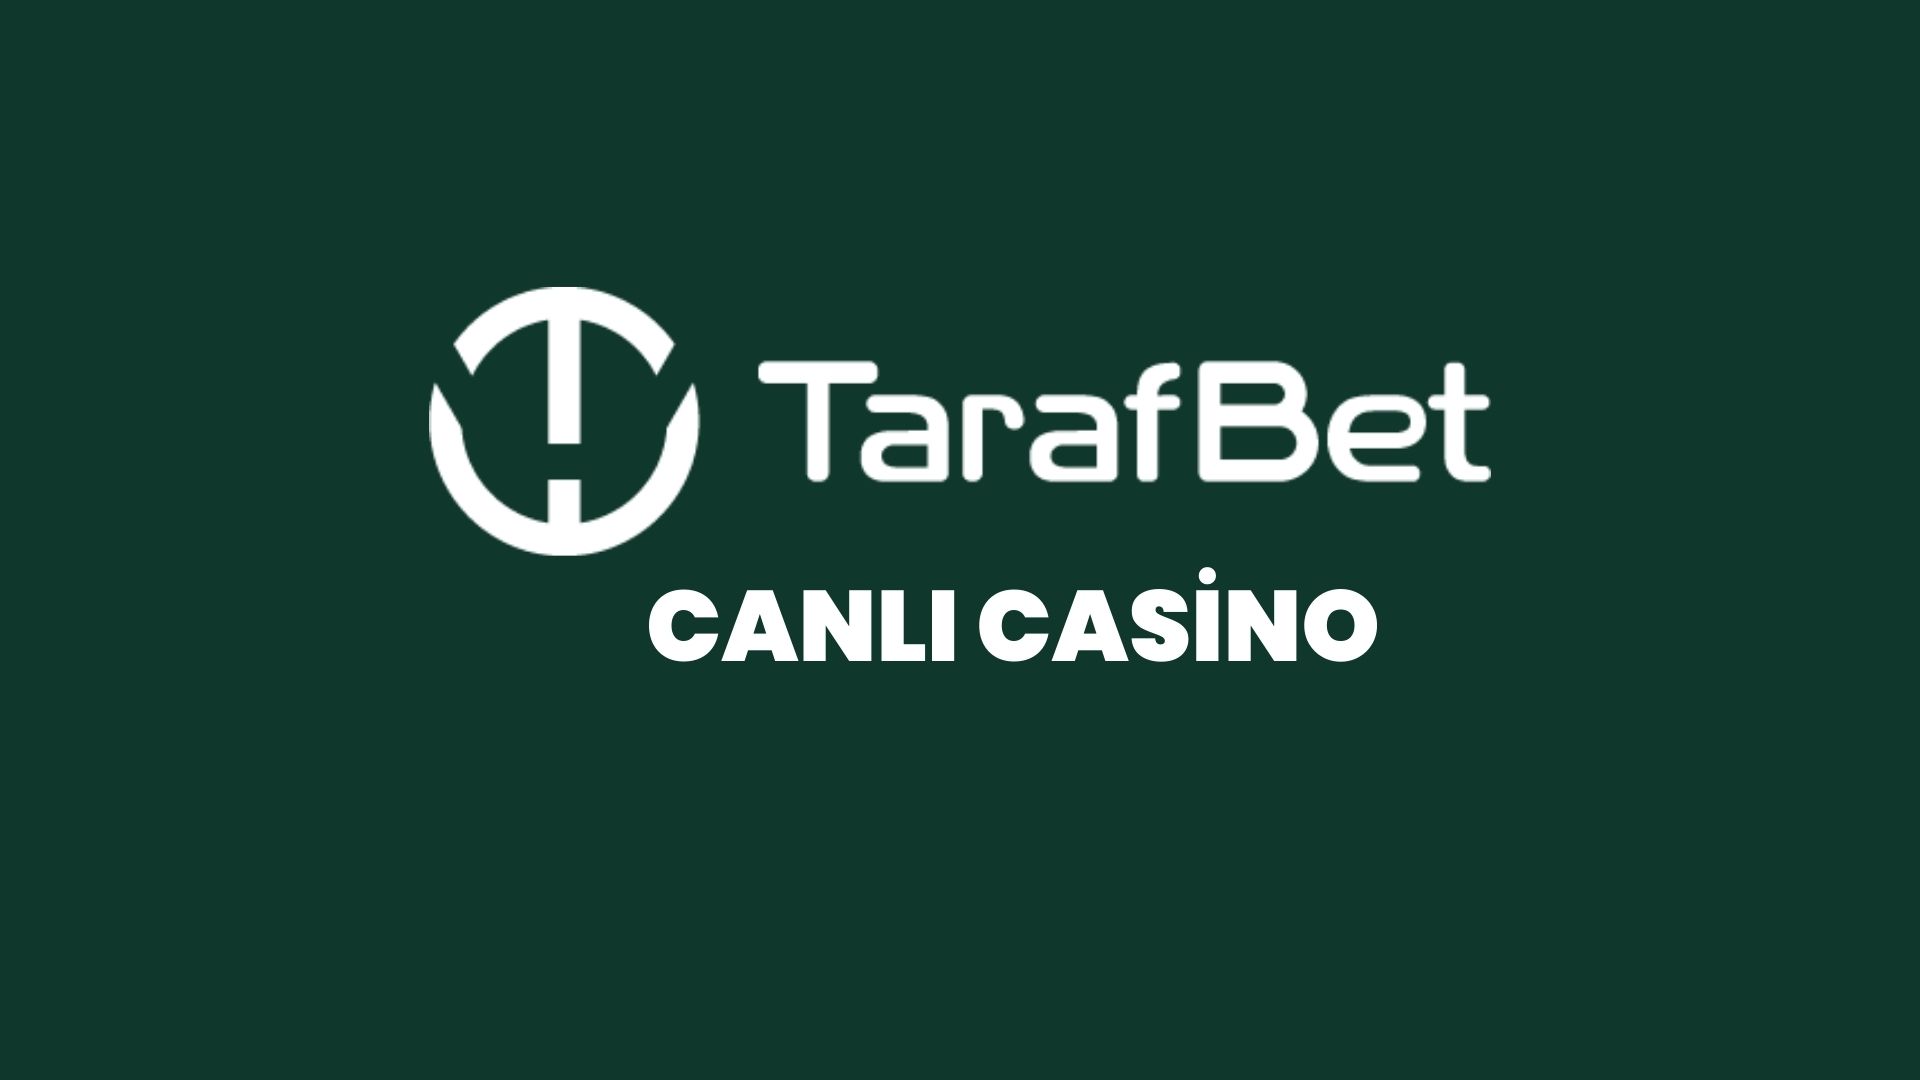 tarafbet-canli-casino